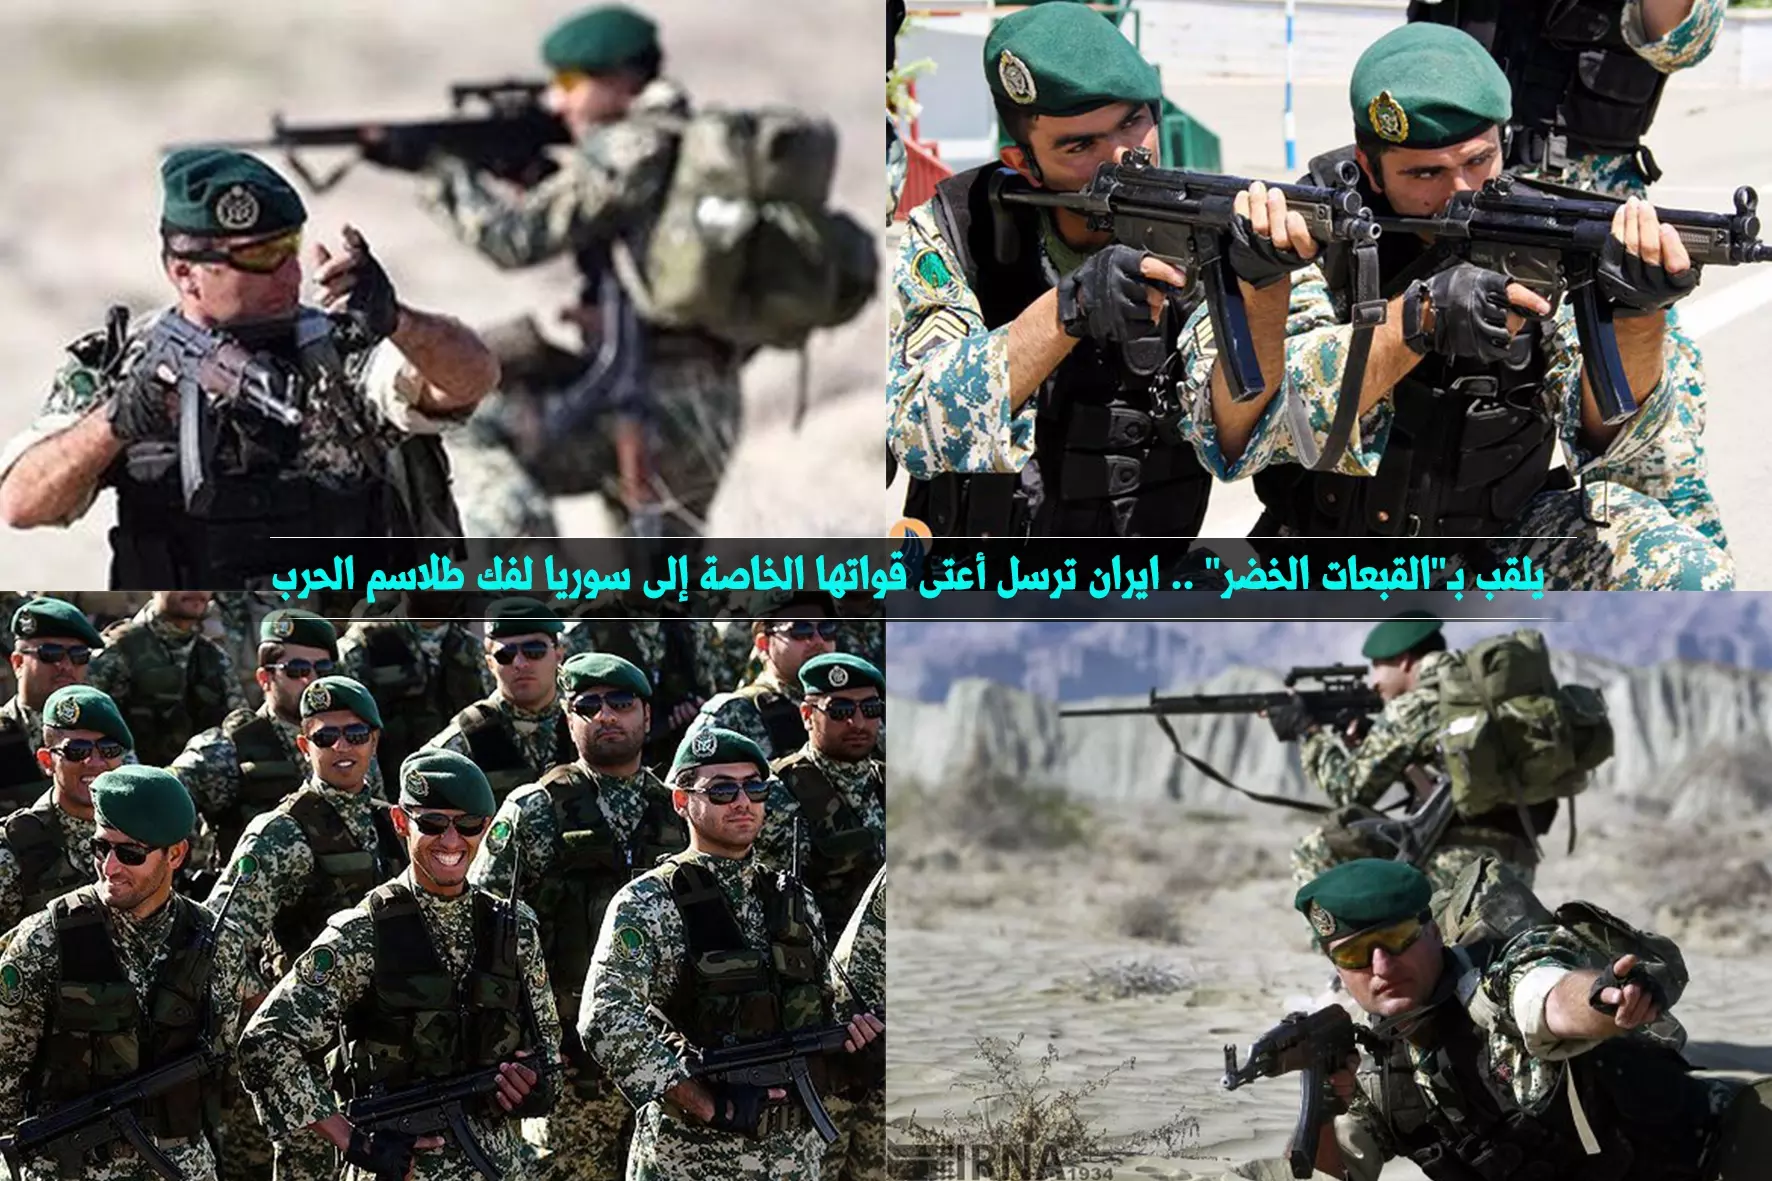 يلقب بـ"القبعات الخضر" .. ايران ترسل أعتى قواتها الخاصة إلى سوريا لفك طلاسم الحرب